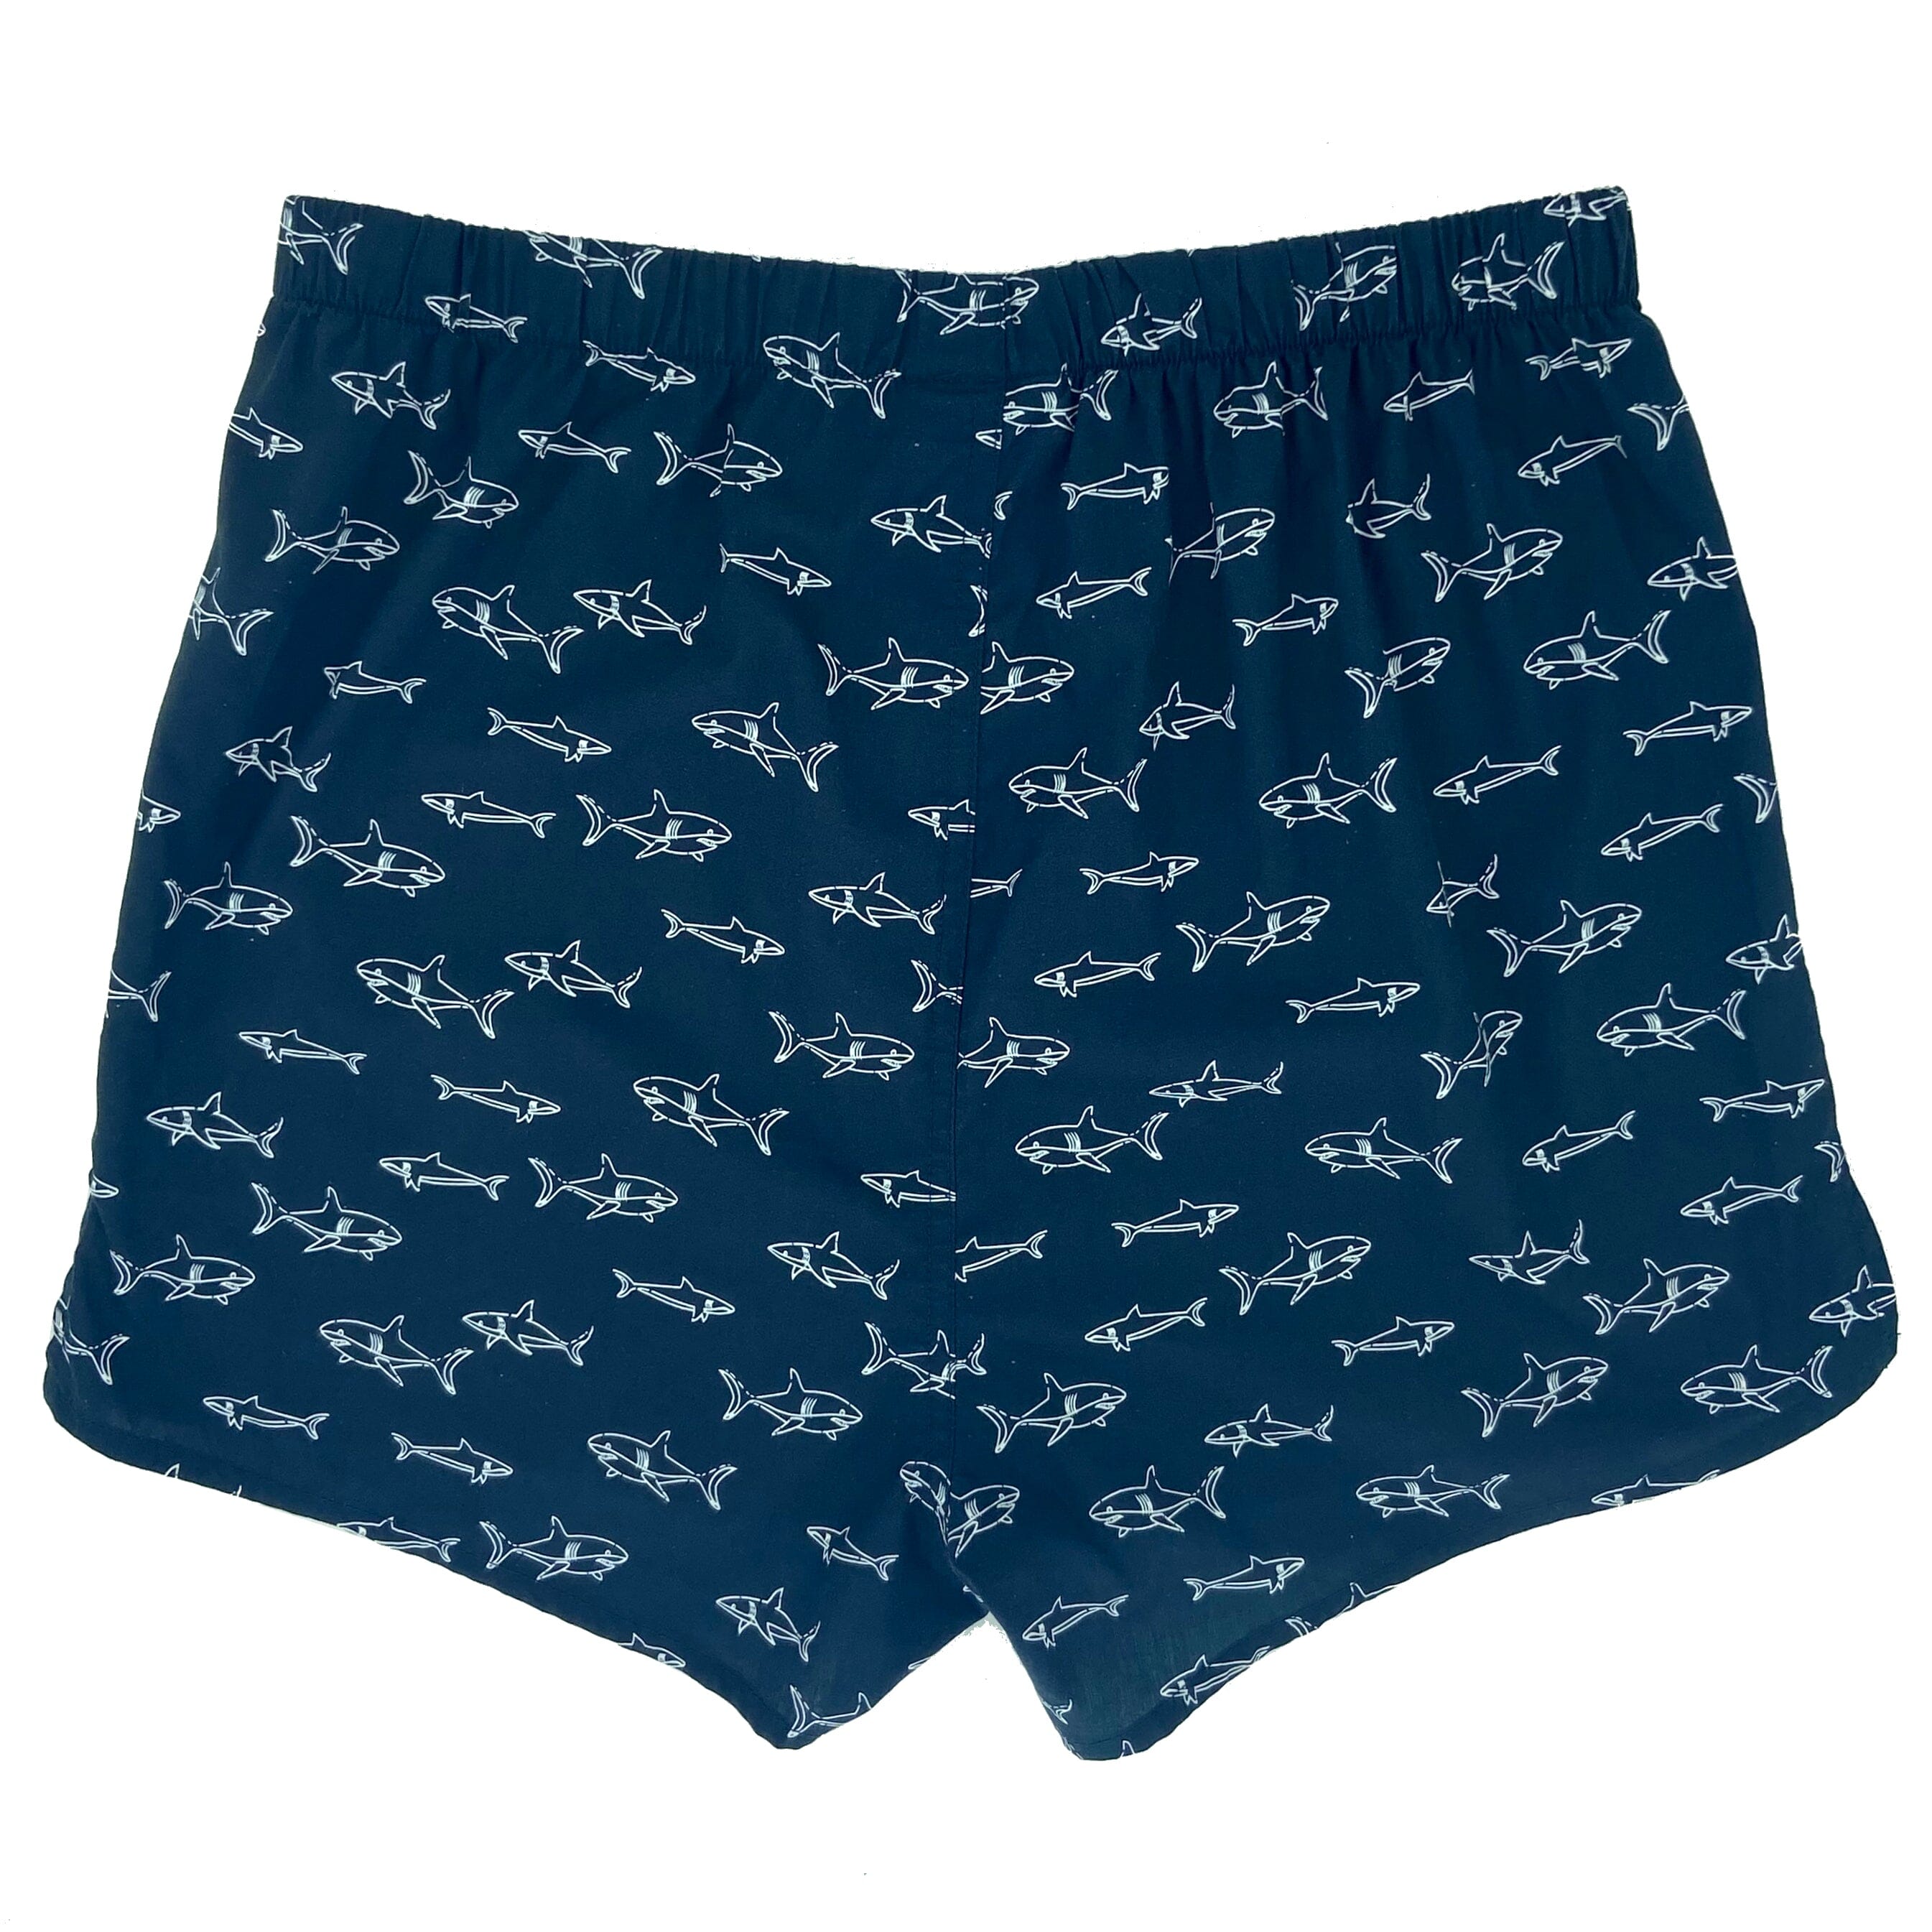 Navy Blue Shark Boxers For Men. Buy Men's Baby Shark Boxer Shorts Here